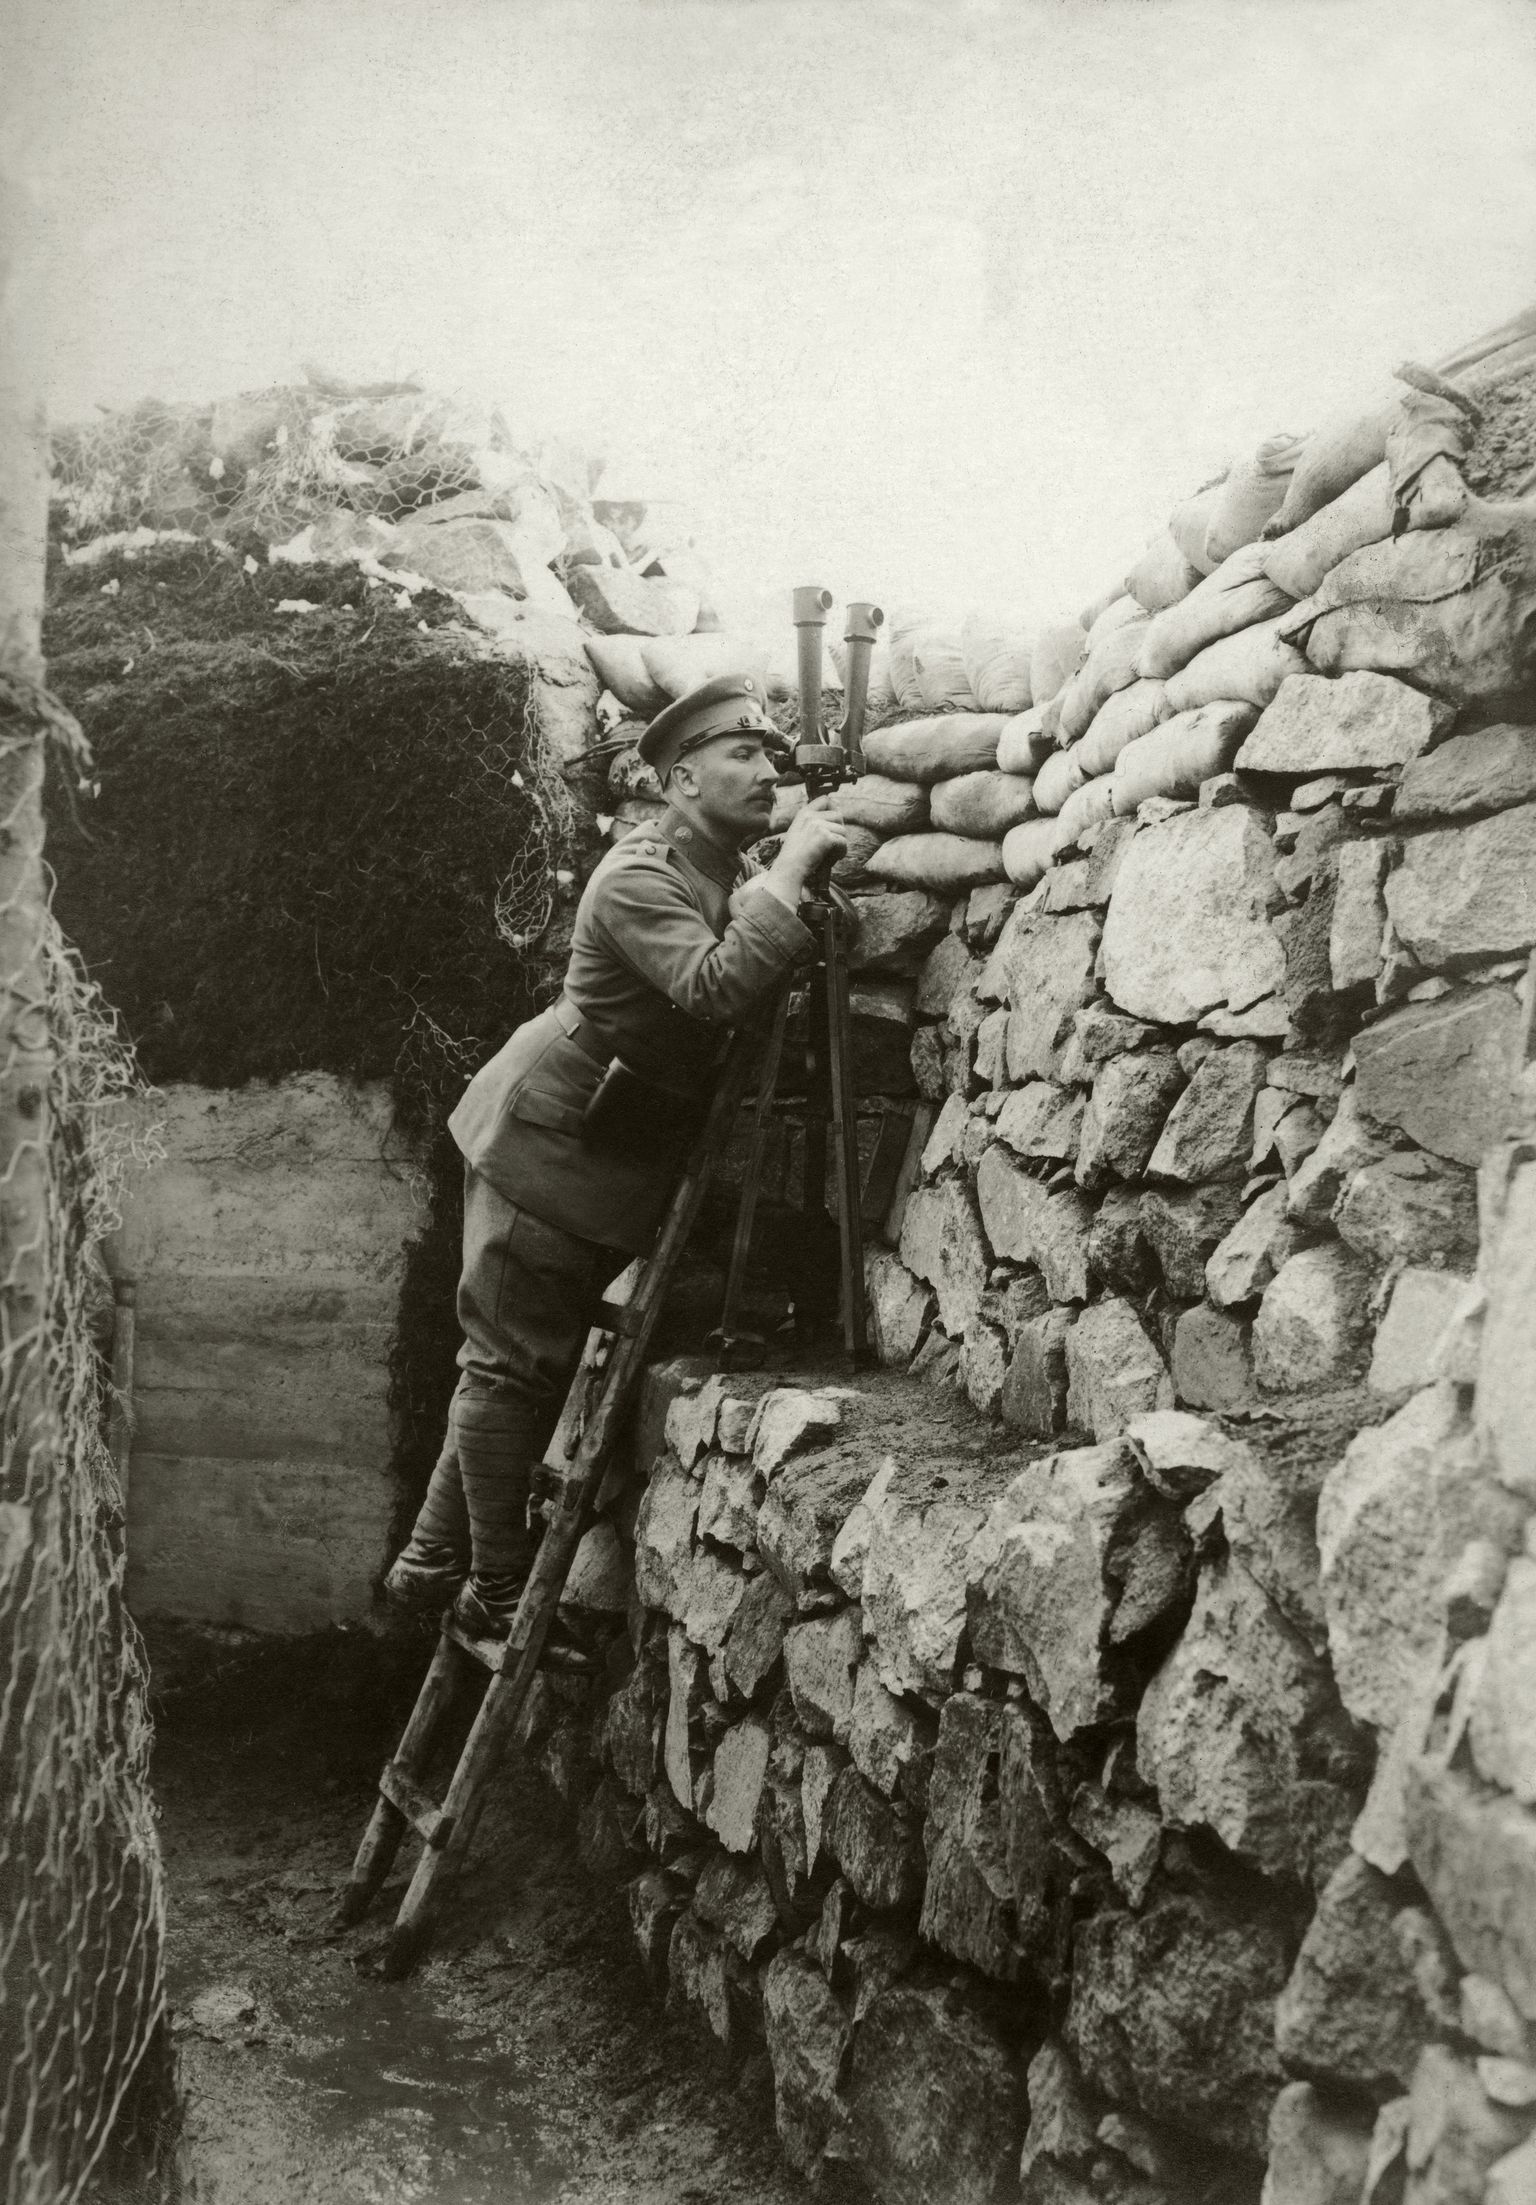 Saksa sõdur esimese maailmasõja ajal Läänerindel kaevikus vaatamas periskoobiga